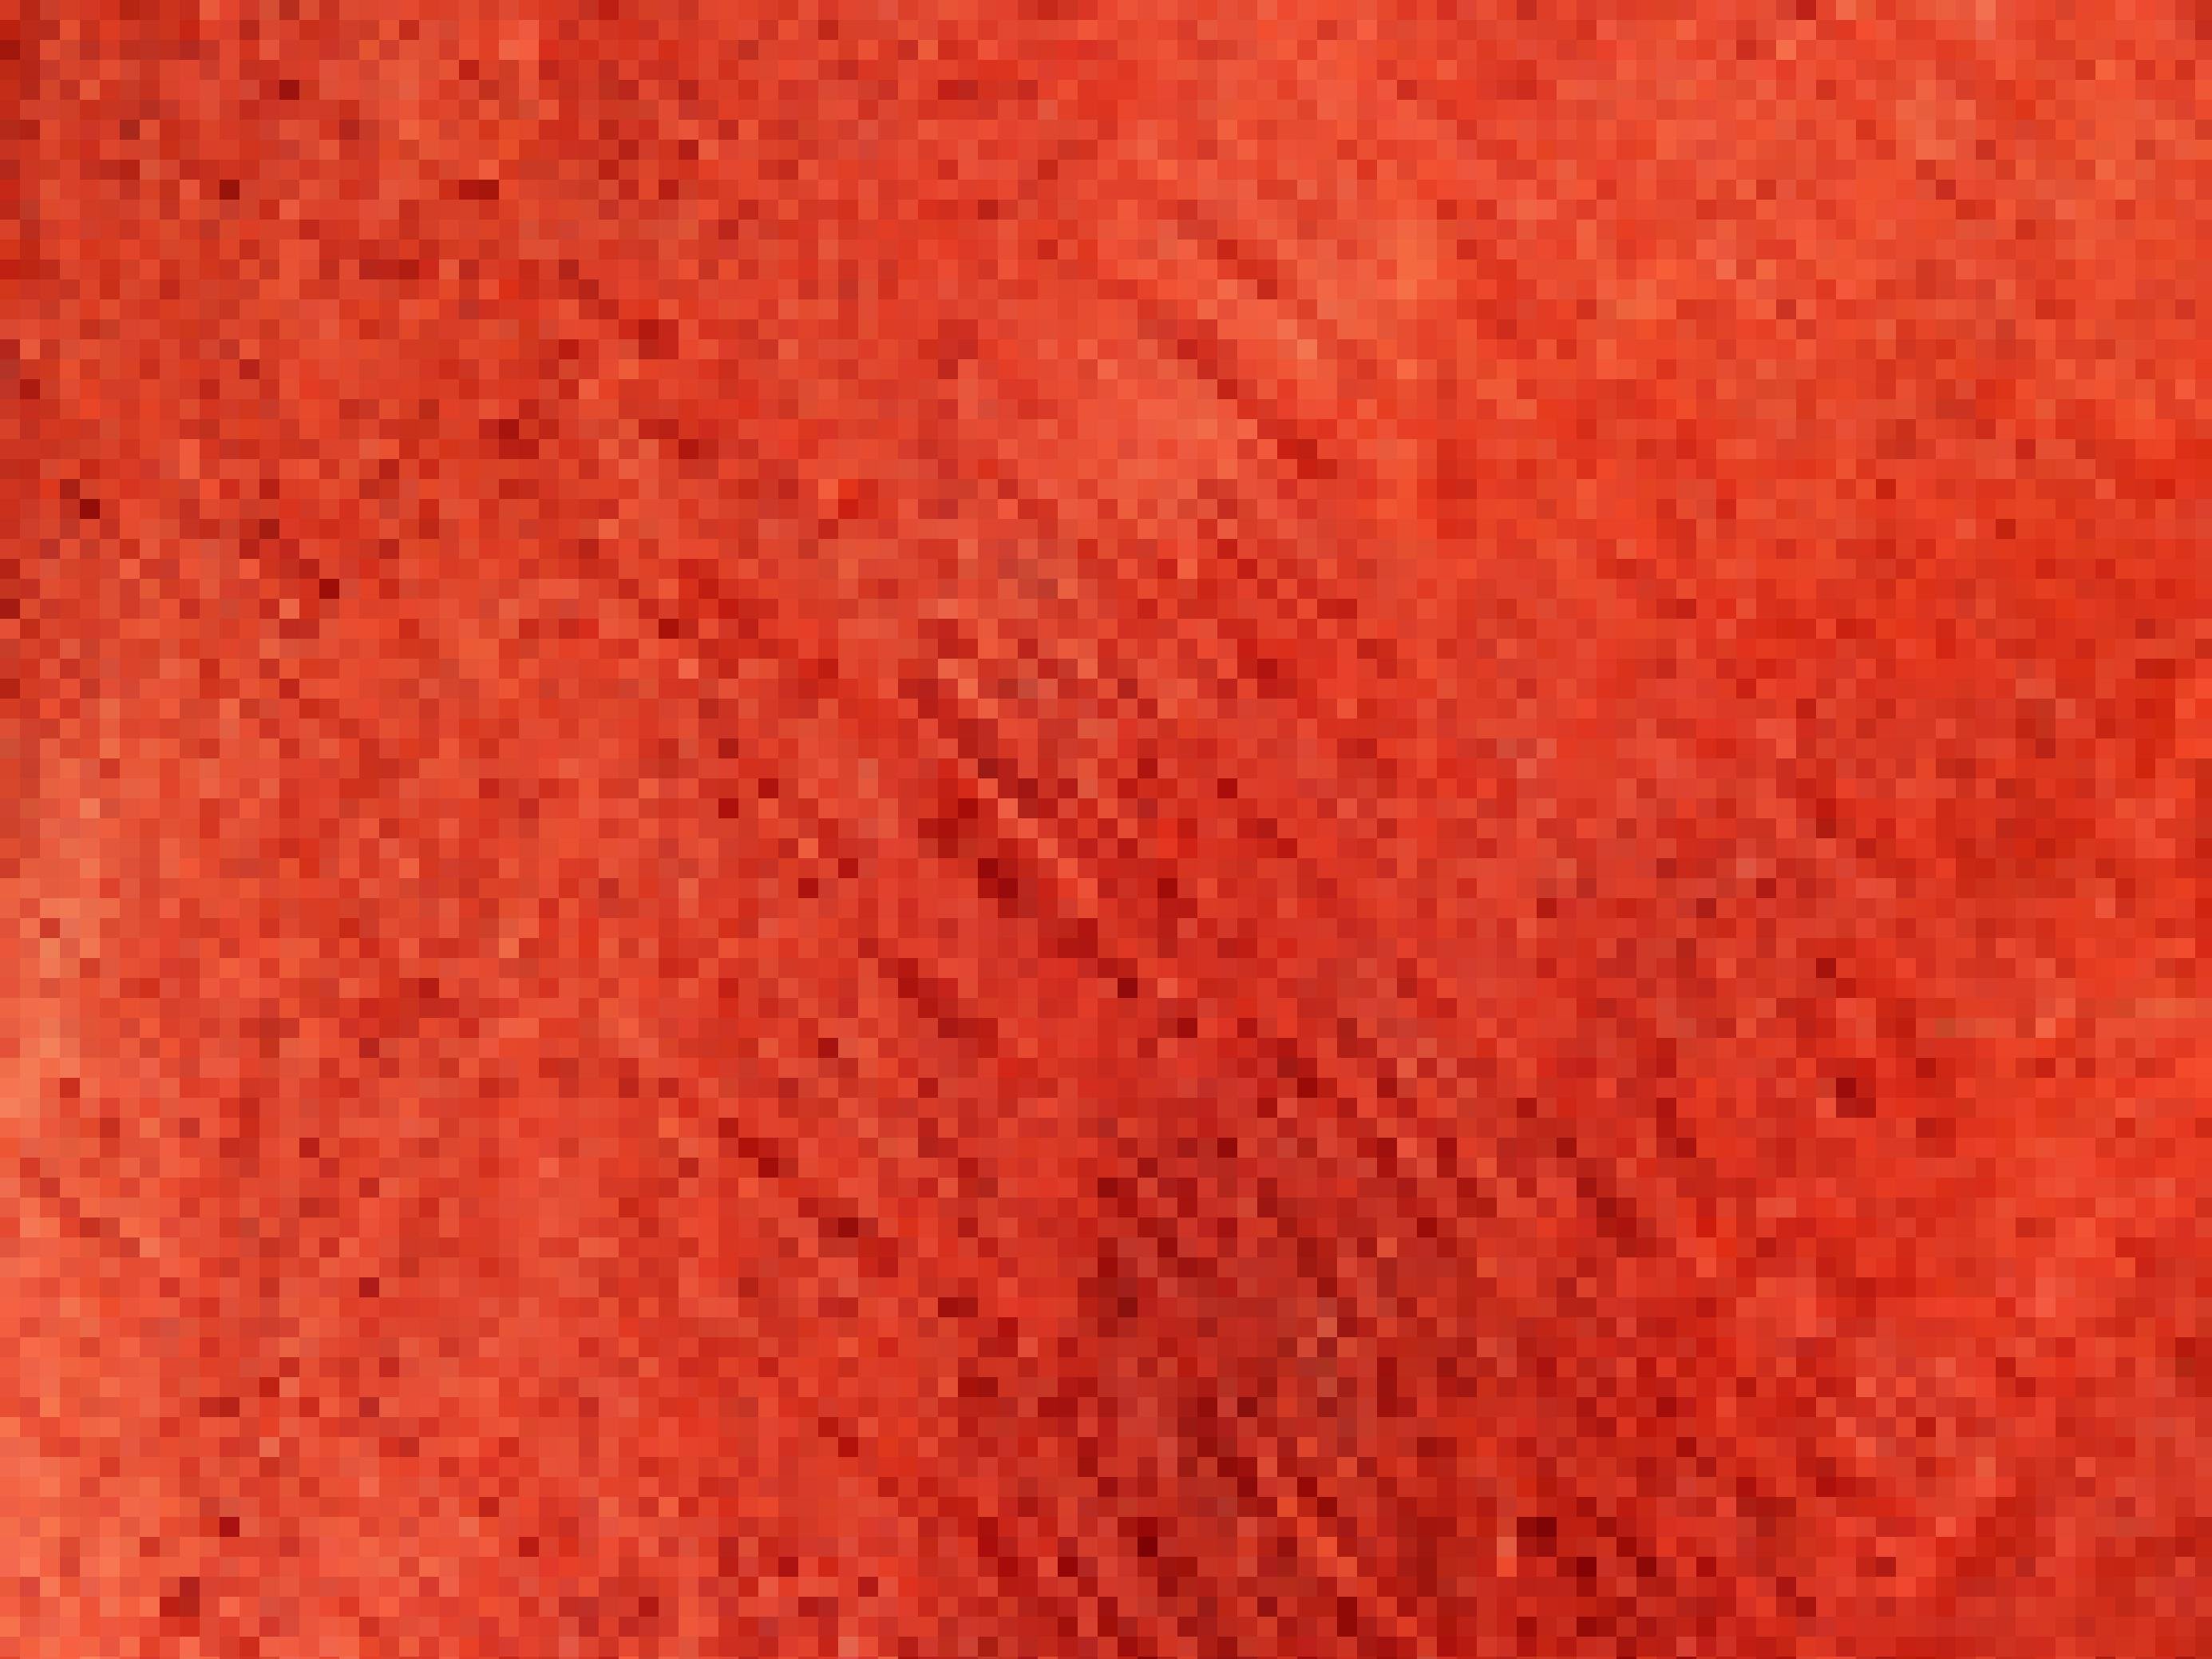 Ein Stück rot gefärbtes Bark Cloth, es ist fast durchsichtig, die Faserstruktur klar erkennbar.